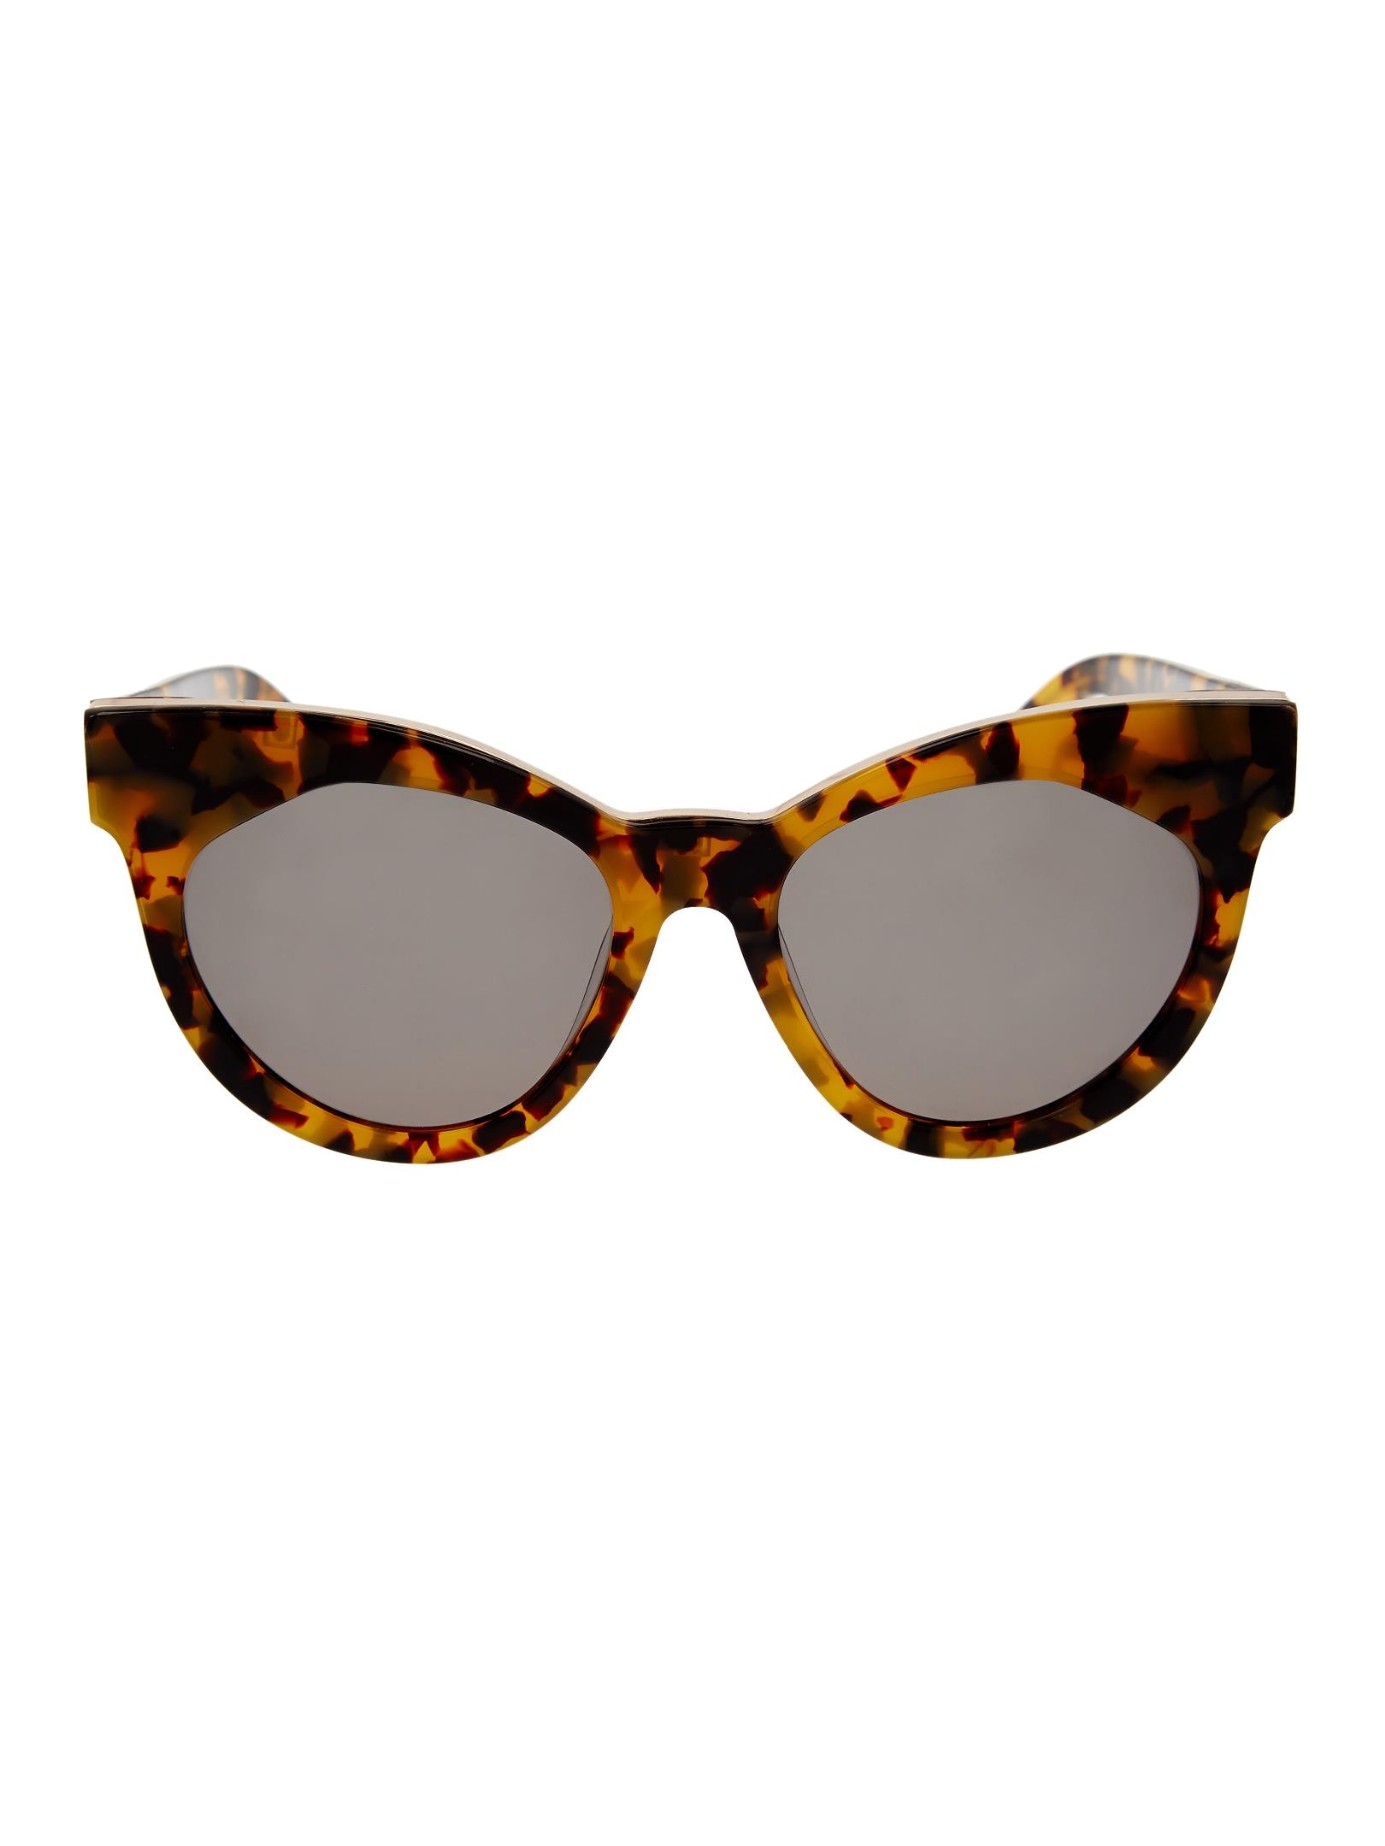 Lyst - Karen Walker Starburst Cat-eye Frame Sunglasses in Brown